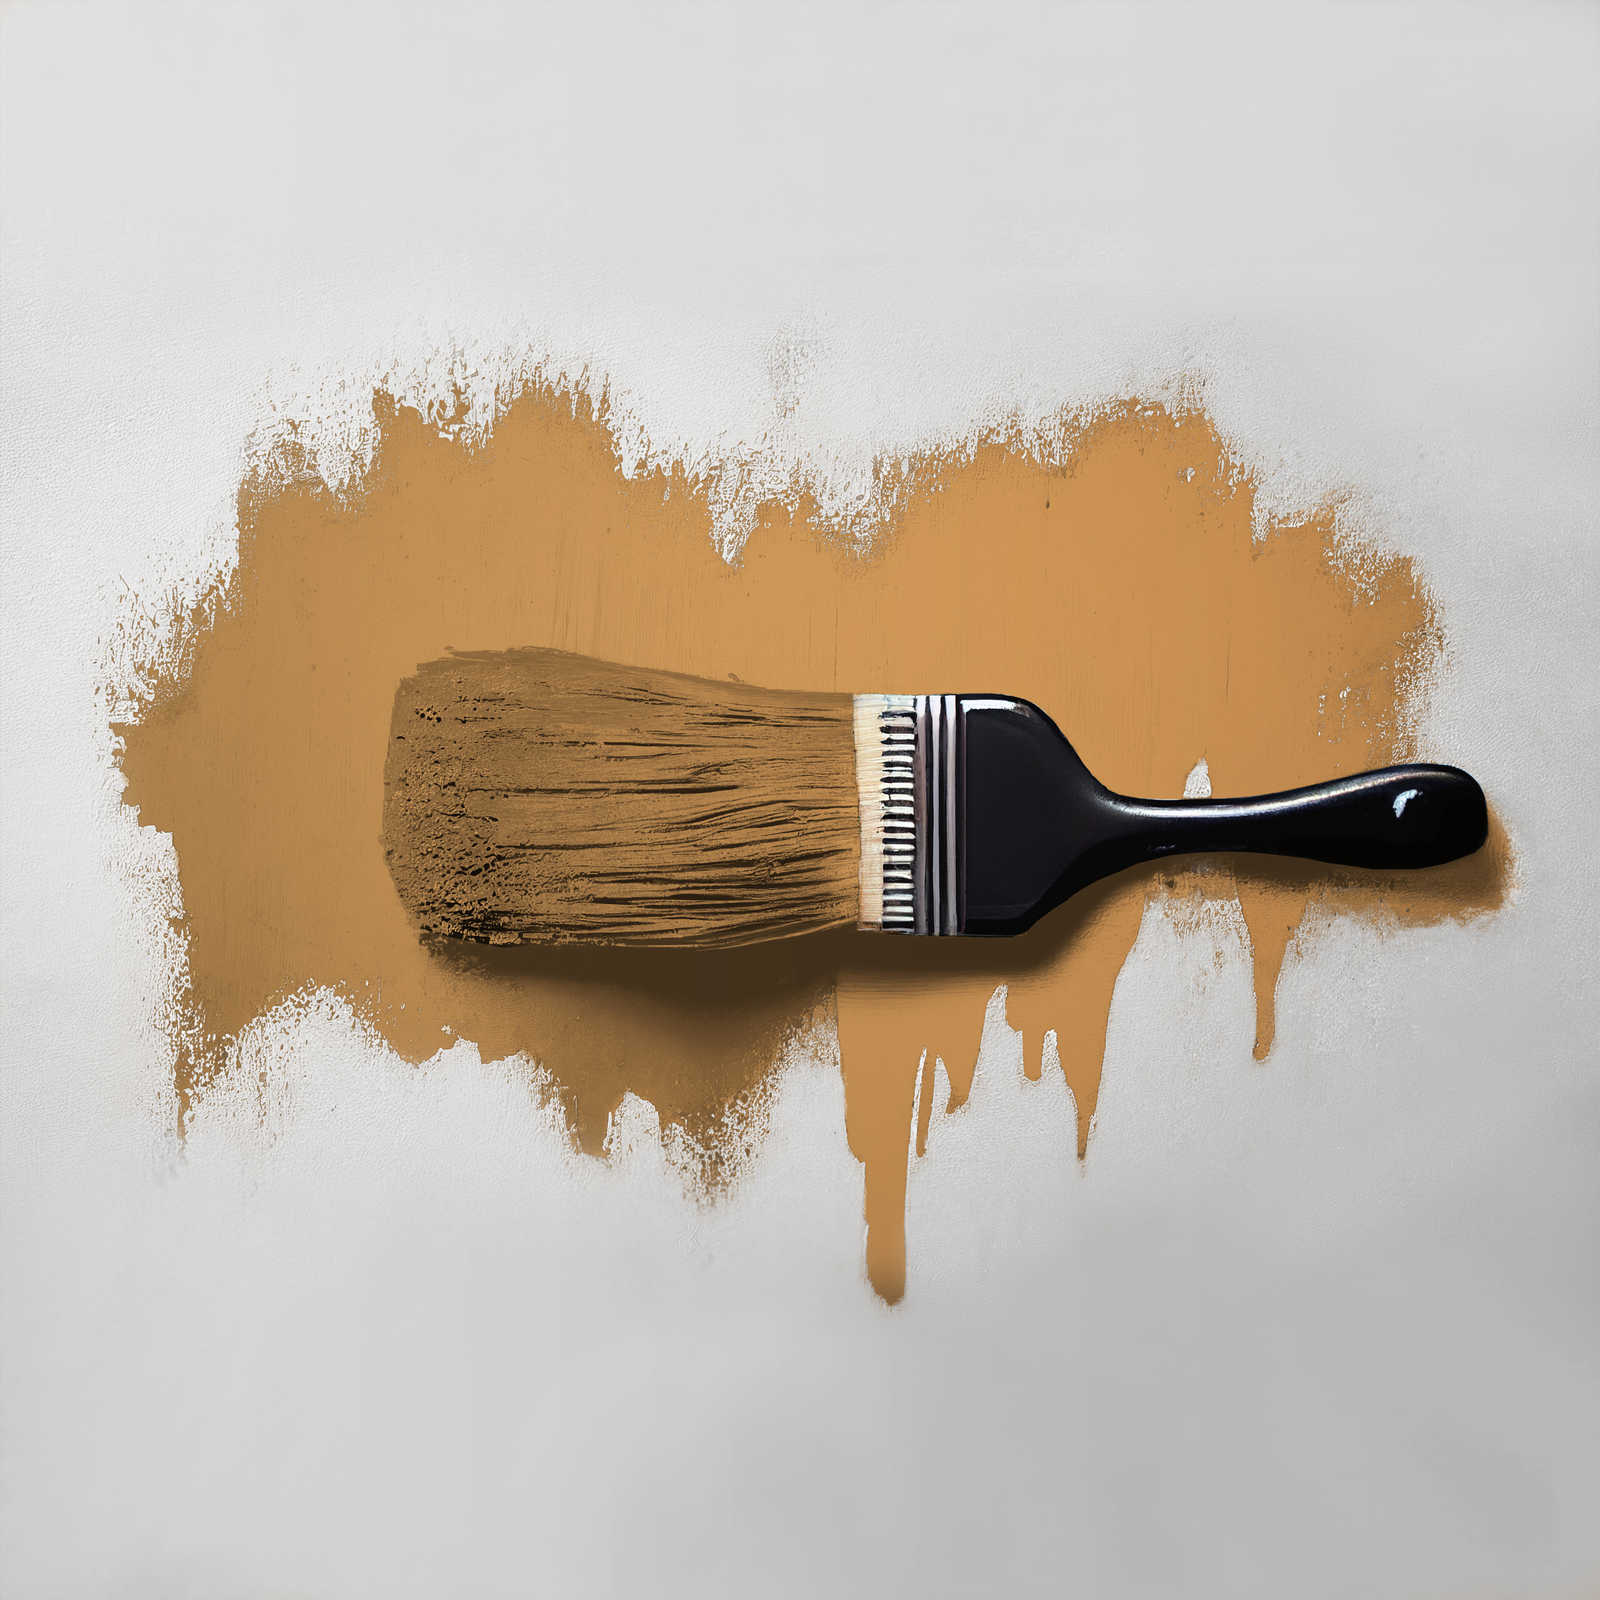             Wall Paint TCK5007 »Salted Caramel« in intense caramel – 5.0 litre
        